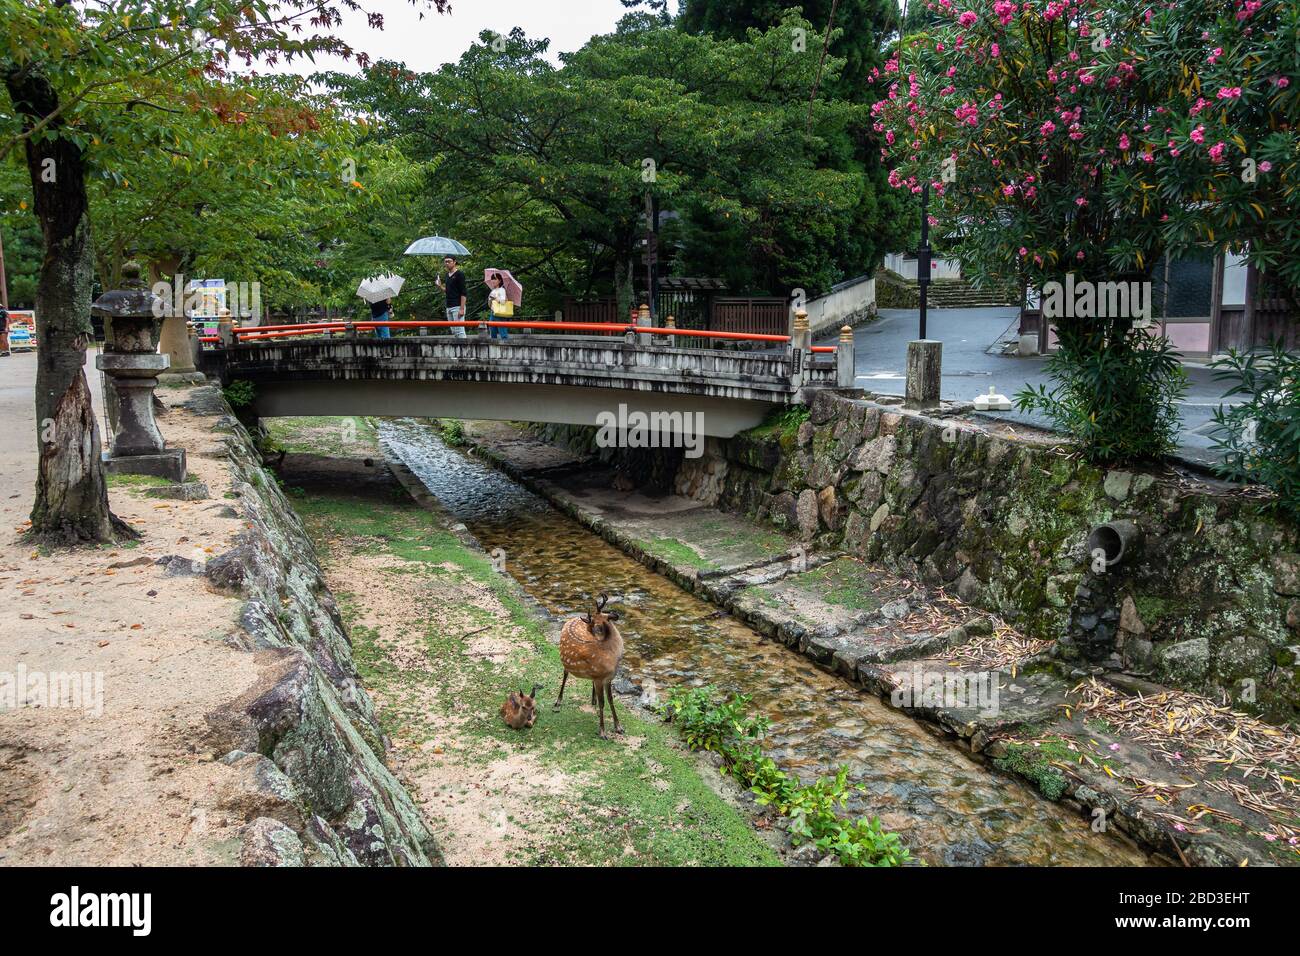 Malerische kleine Brücke auf der Miyajima-Insel mit zwei Rotwild, die frei in der Nähe eines kleinen Flusses herumlaufen. Miyajima, Japan, August 2019 Stockfoto